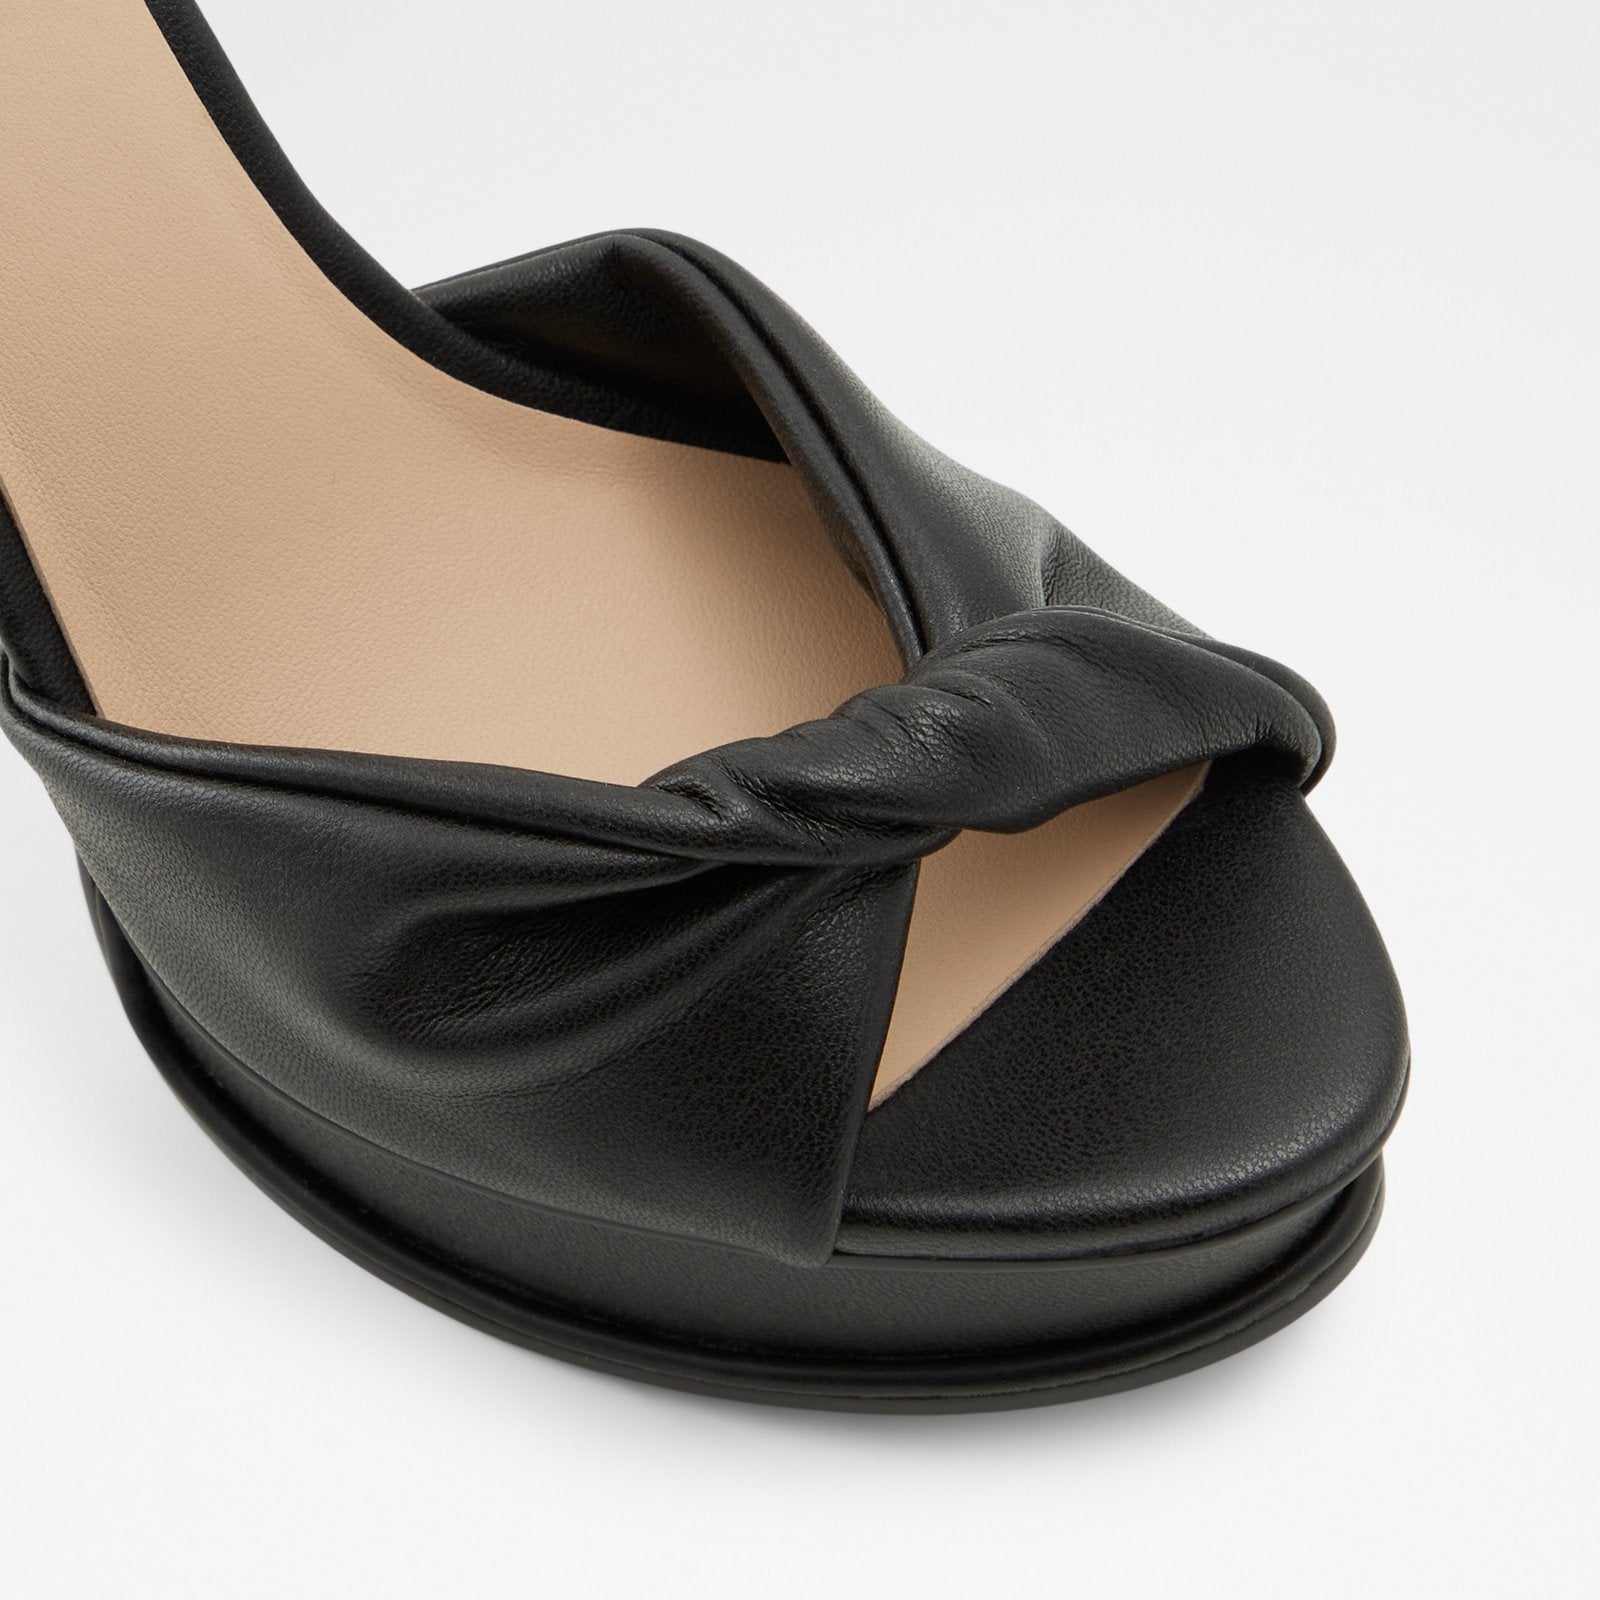 Trevena Women Shoes - Black - ALDO KSA